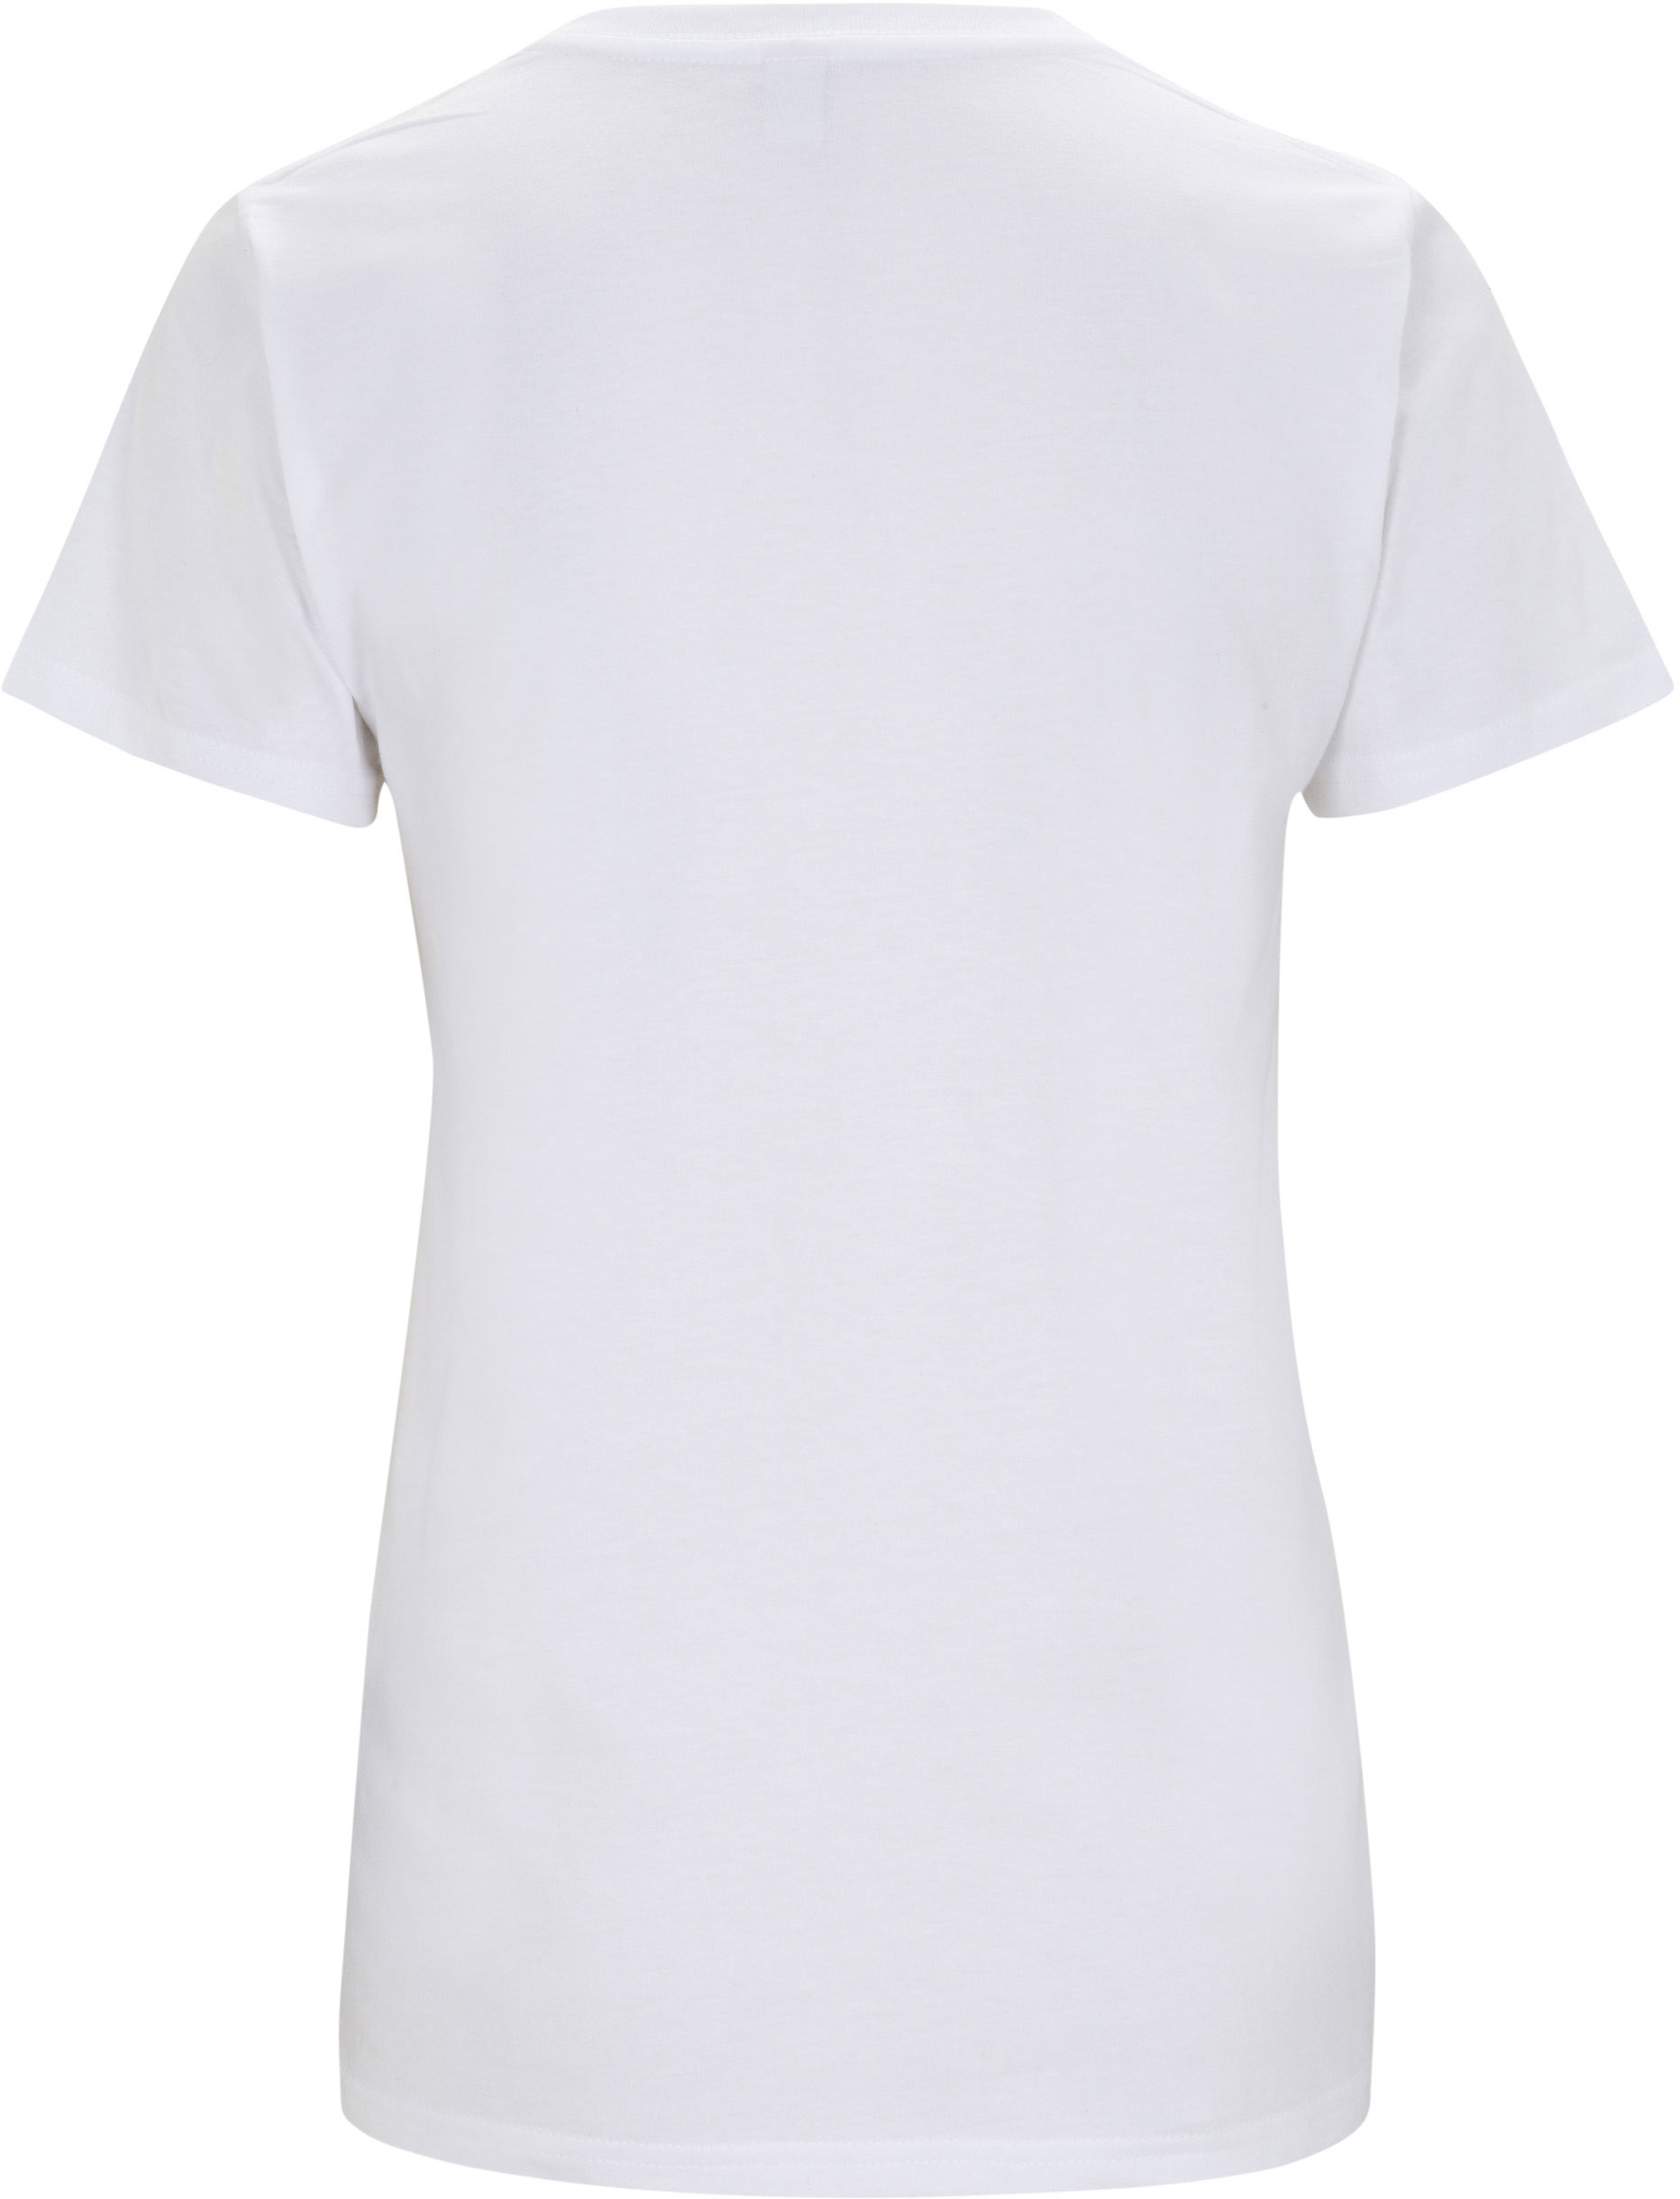 Weißes Damen Shirt mit geradem Schnitt - Biobaumwolle